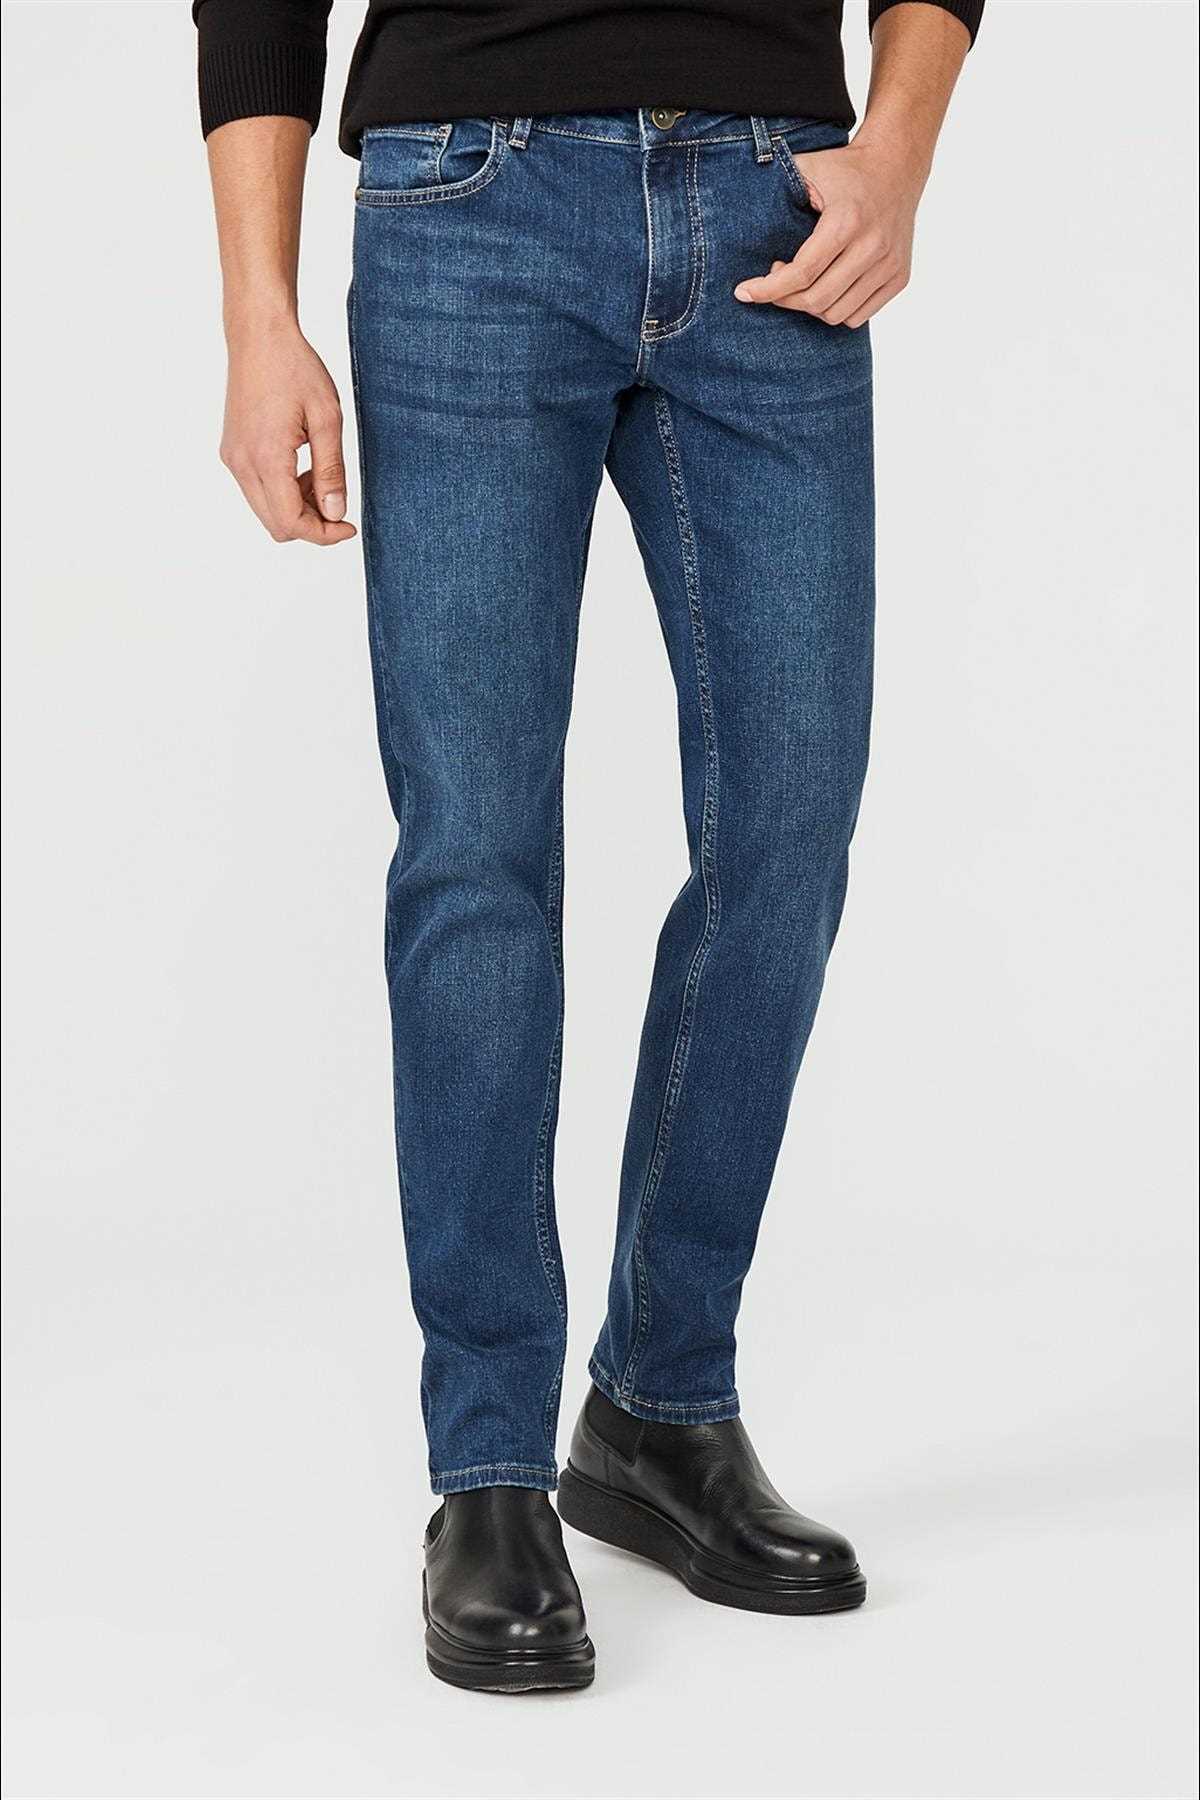 خرید ارزان شلوار جین فانتزی مردانه برند آوا رنگ آبی کد ty52327743